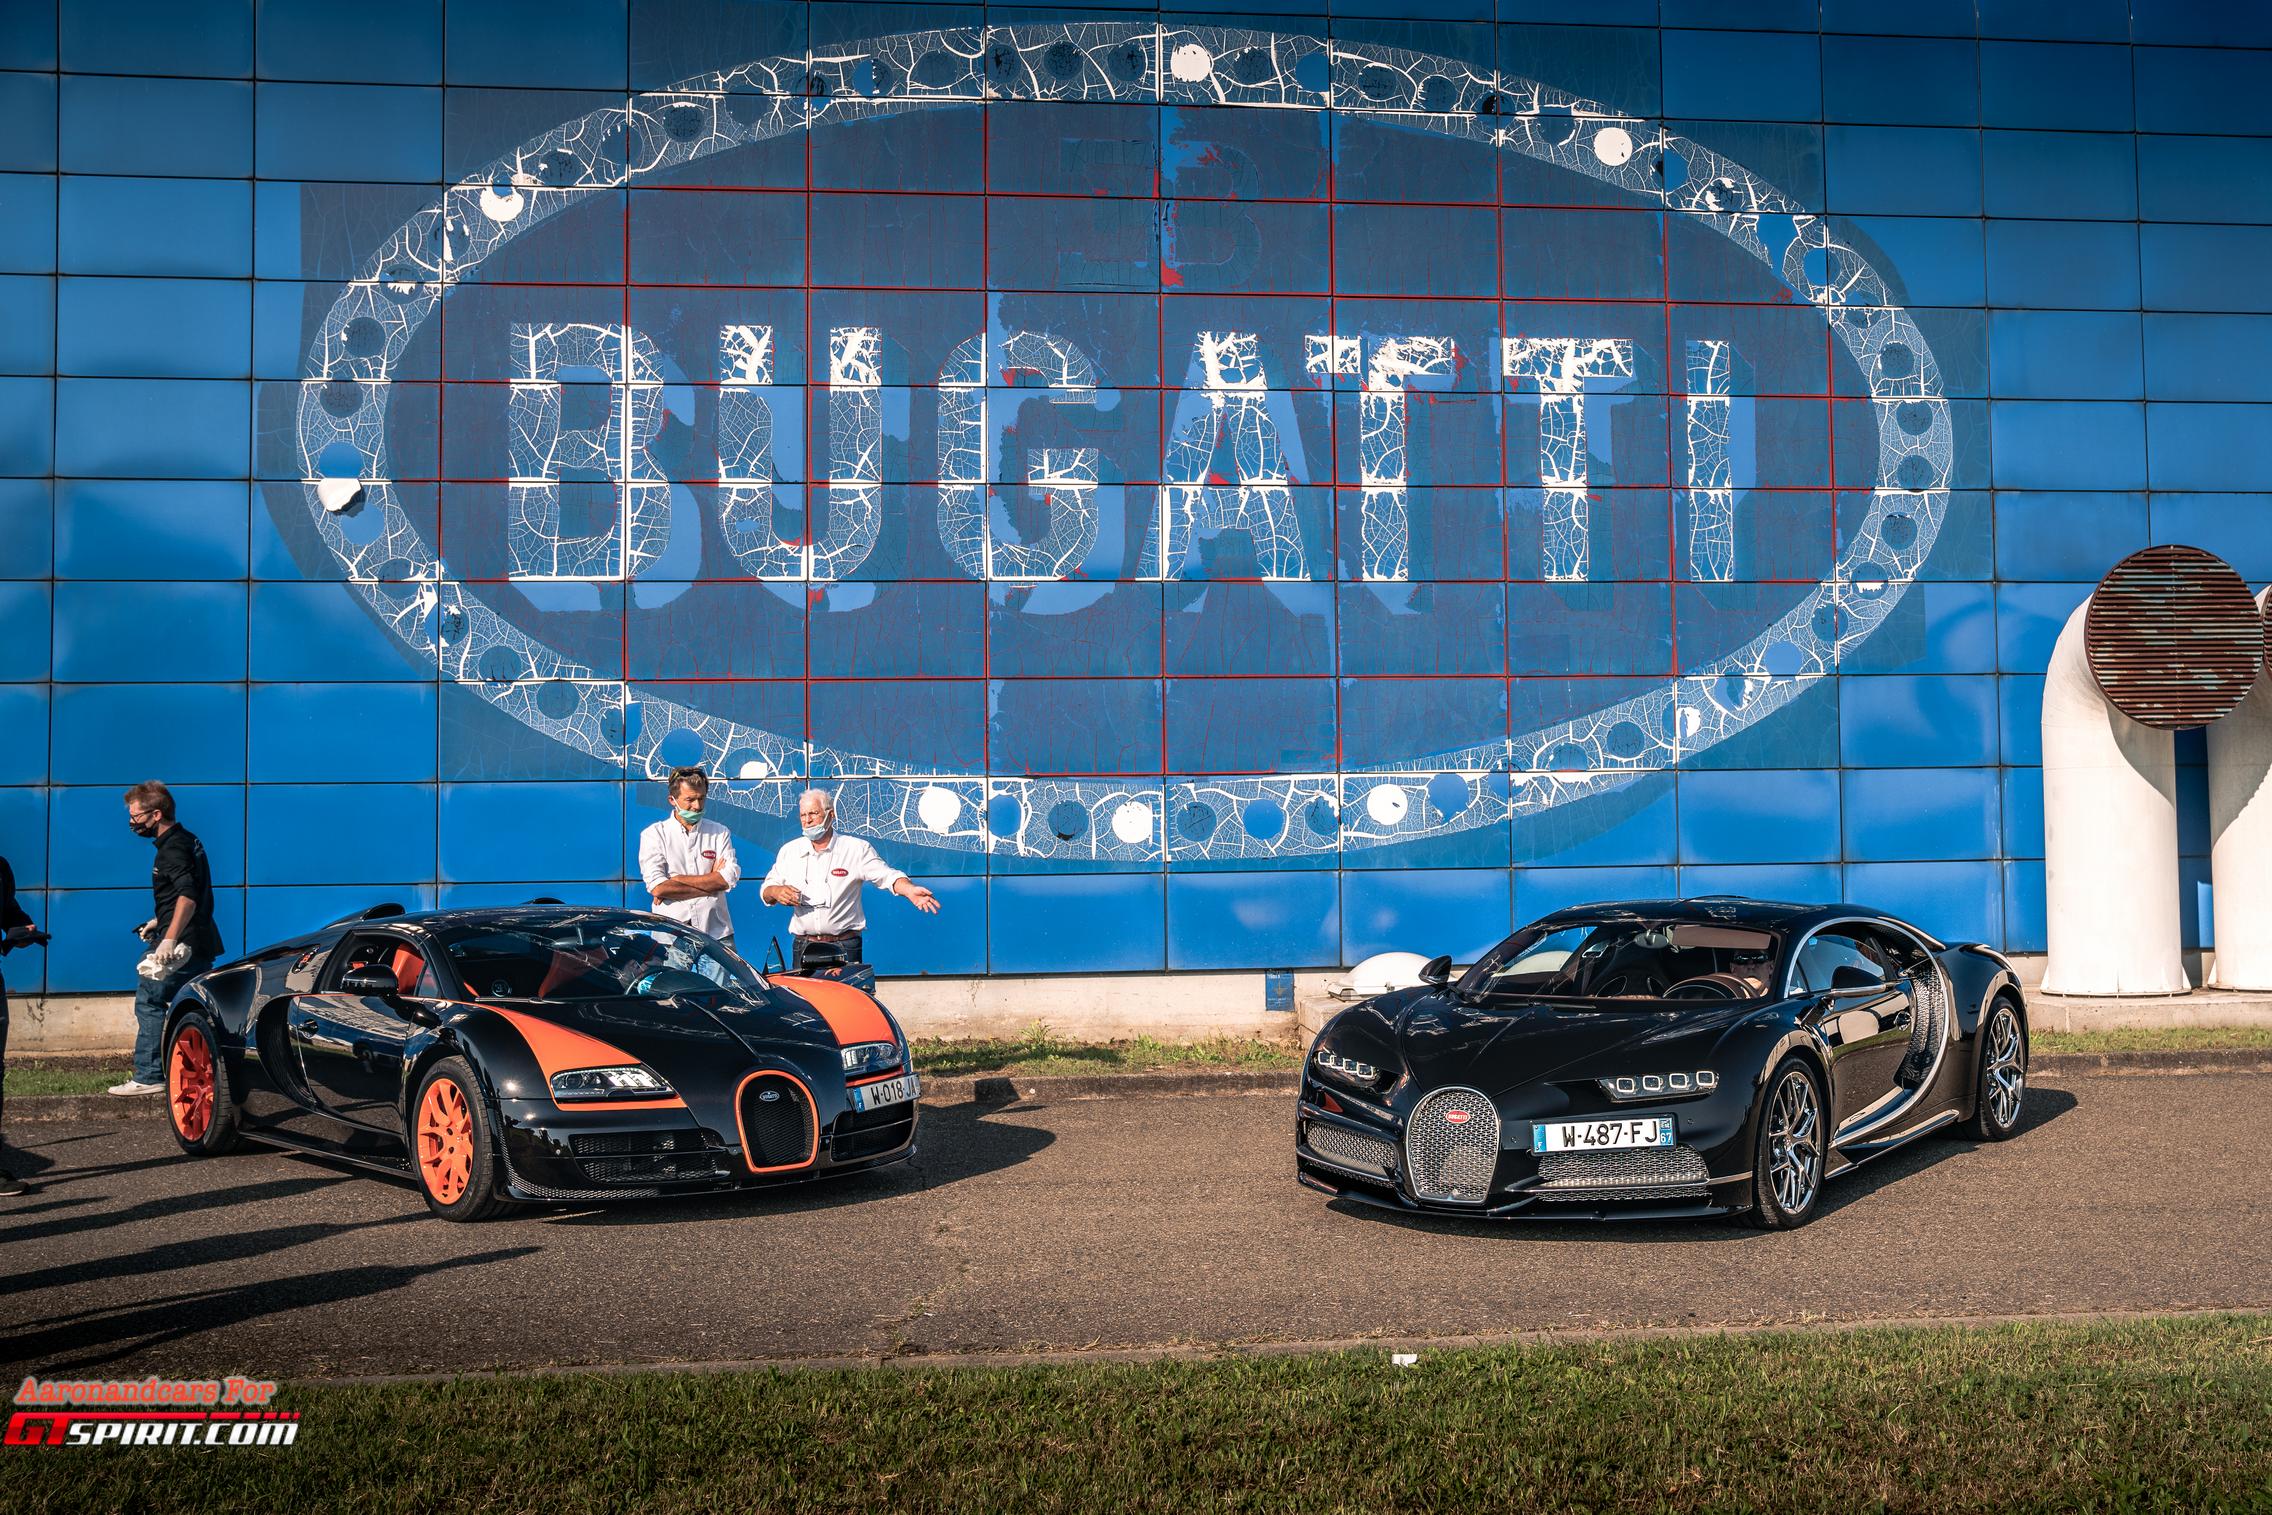 В честь празднования Bugatti SAS представил две легенды, рожденные в эпоху VW, Bugatti Veyron и Chiron в версиях Super Sport WRE и Sport и особую модель - концепт-кар Centodieci.